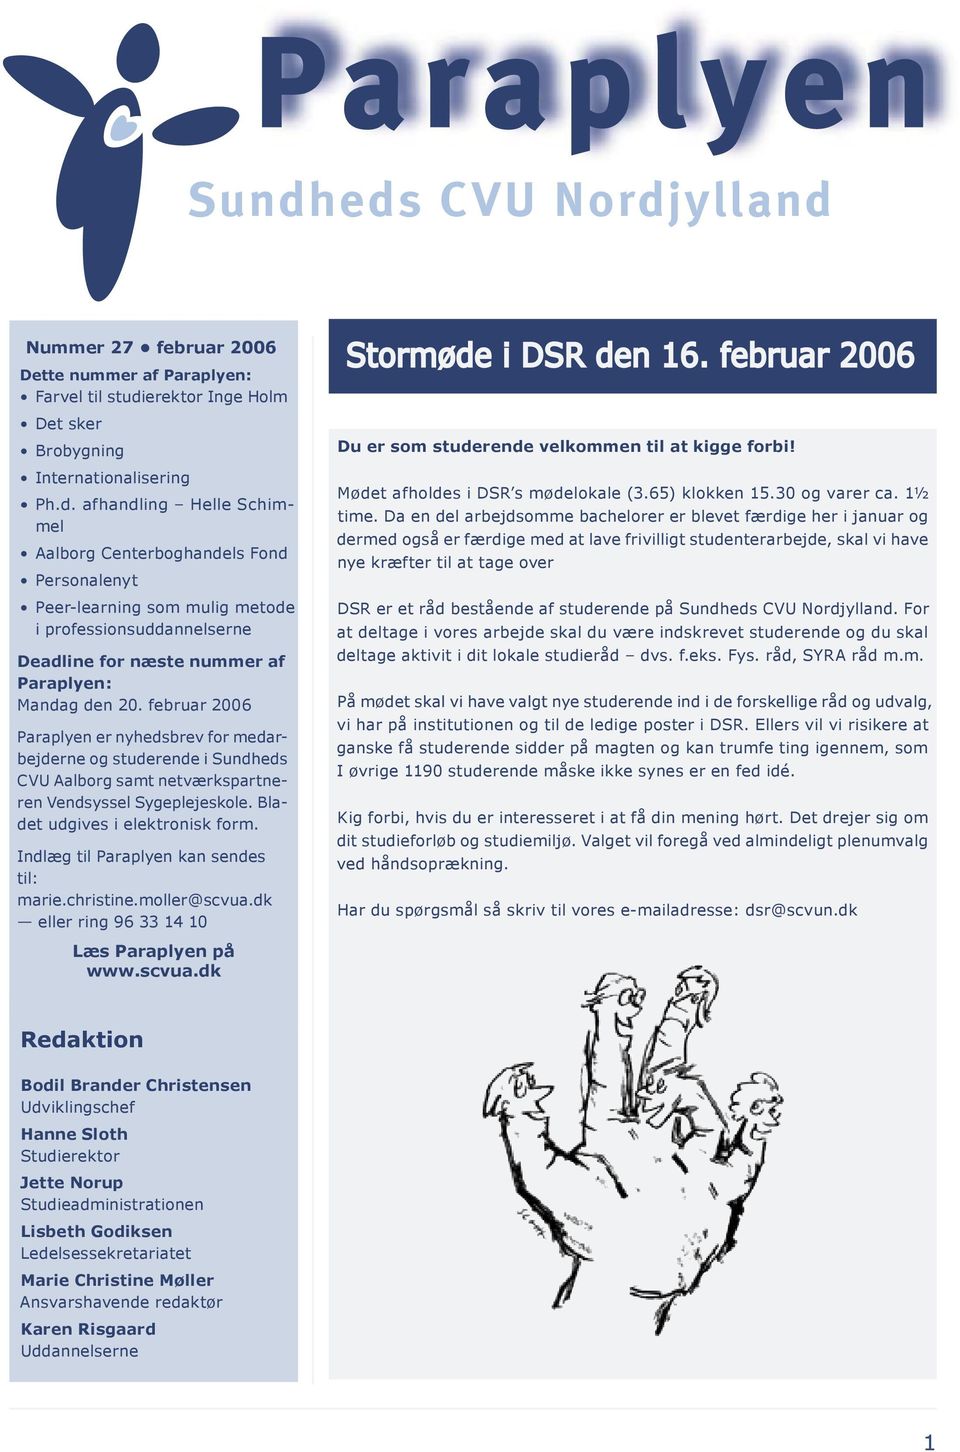 februar 2006 Paraplyen er nyhedsbrev for med arbejderne og studerende i Sundheds CVU Aalborg samt netværkspartneren Vendsyssel Sygeplejeskole. Bladet udgives i elektronisk form.